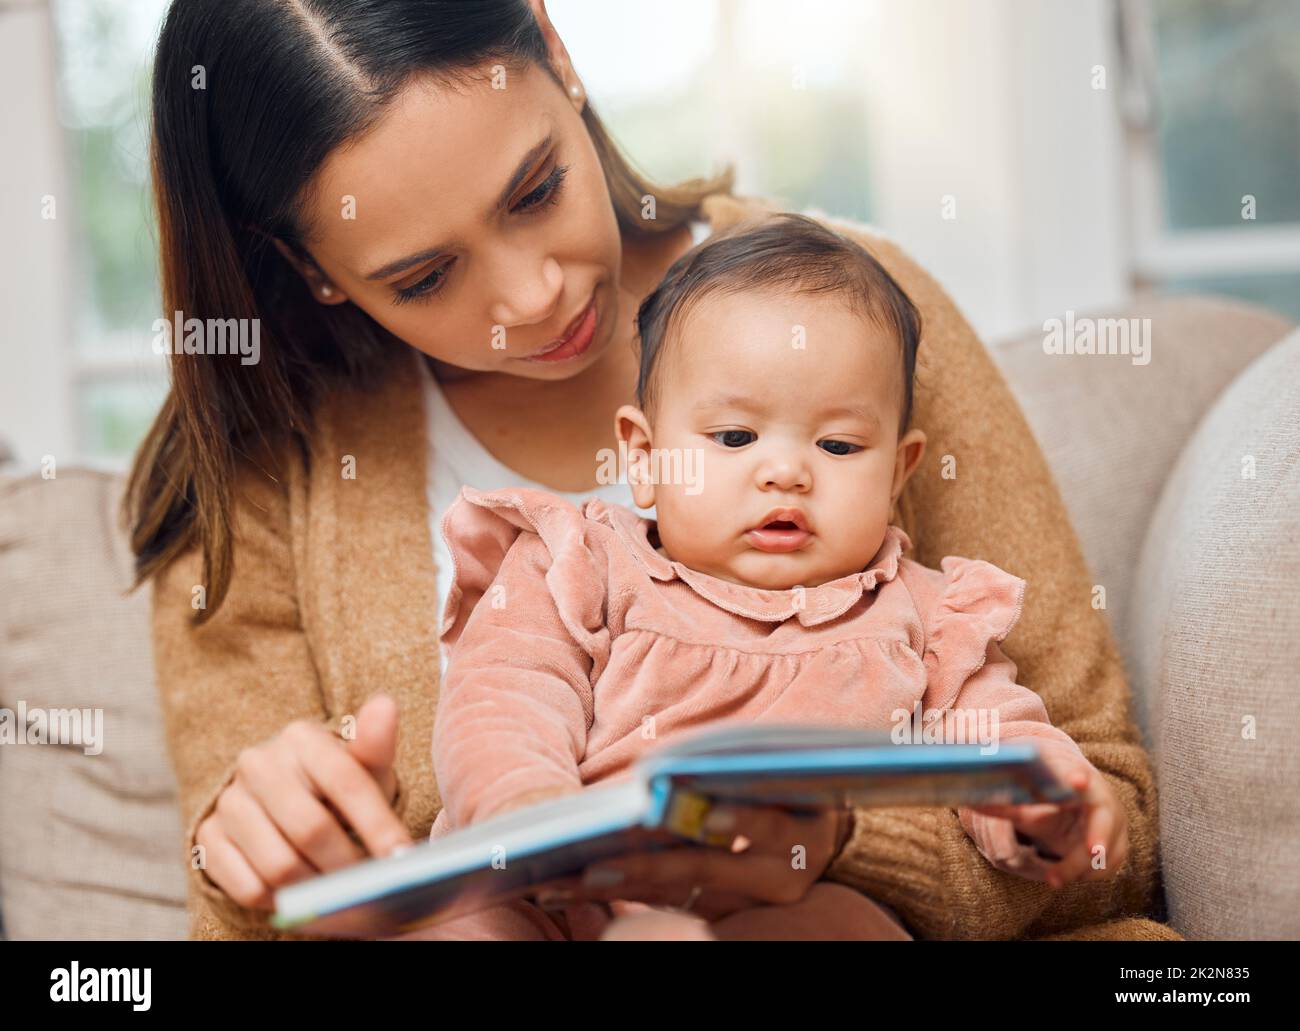 Sie liebt ein gutes Bilderbuch. Aufnahme einer Frau, die ihr kleines Mädchen vorliest. Stockfoto